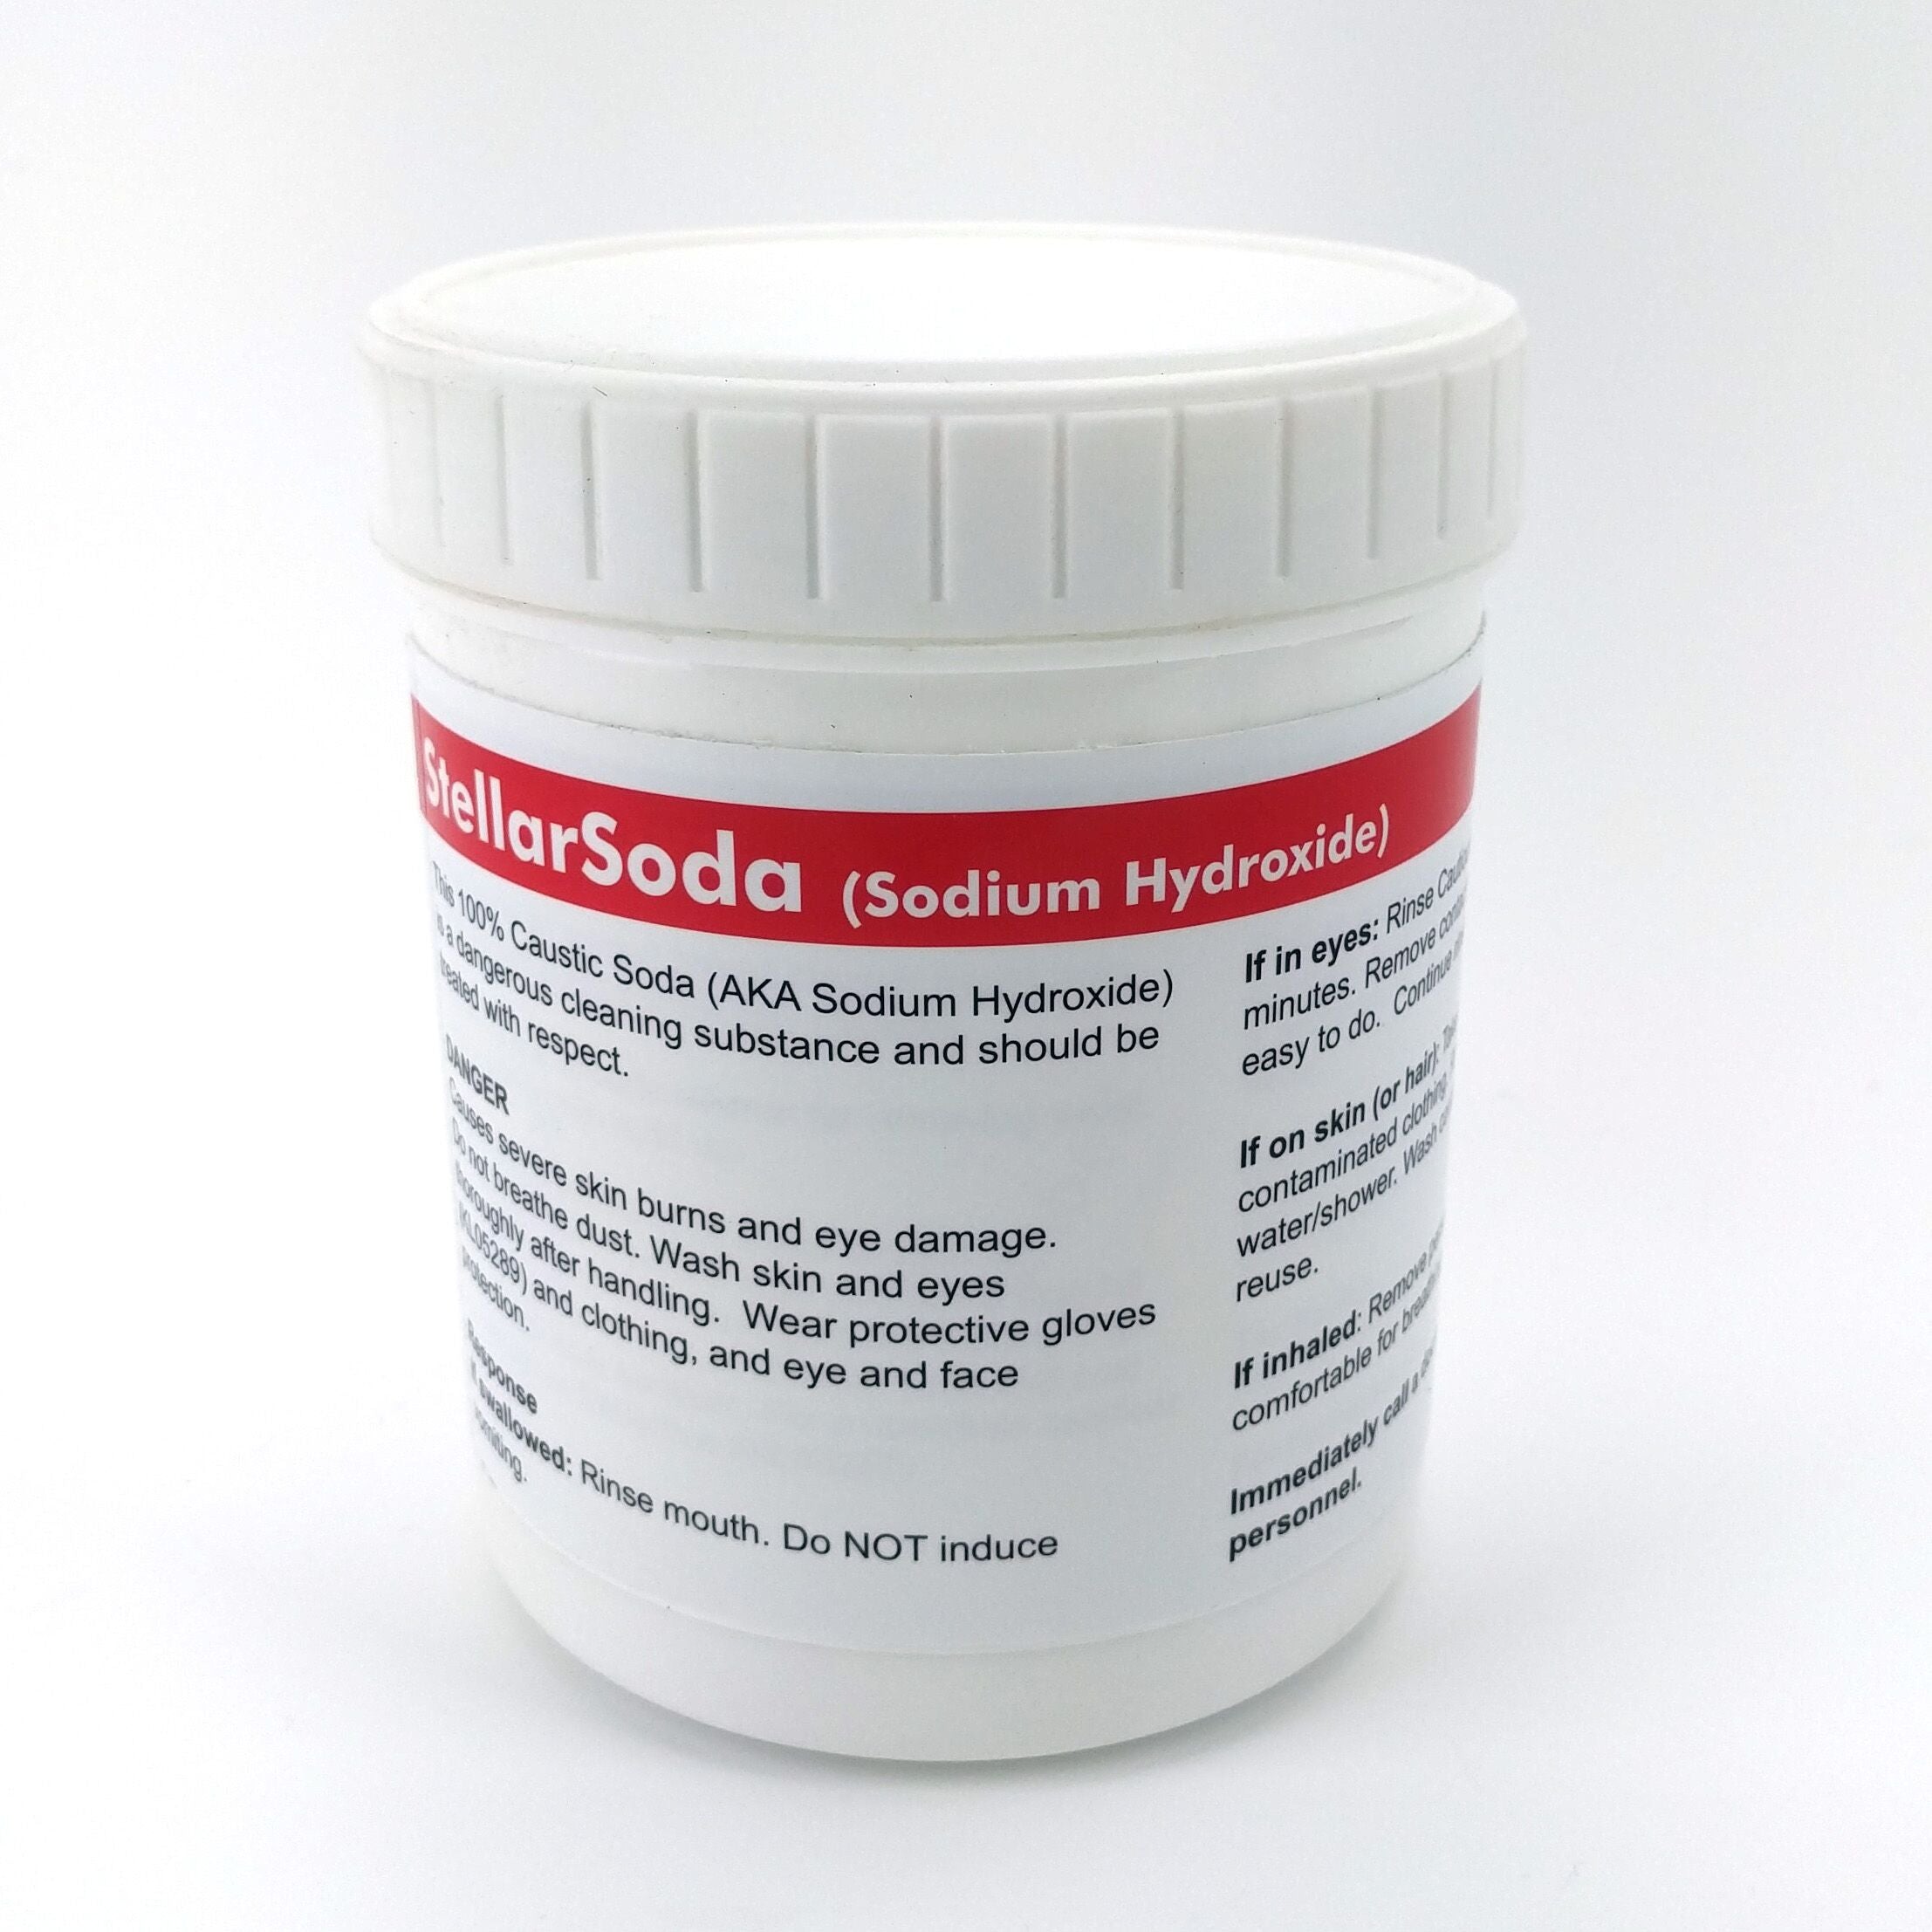 StellarSoda - 100% Caustic Soda - Sodium Hydroxide